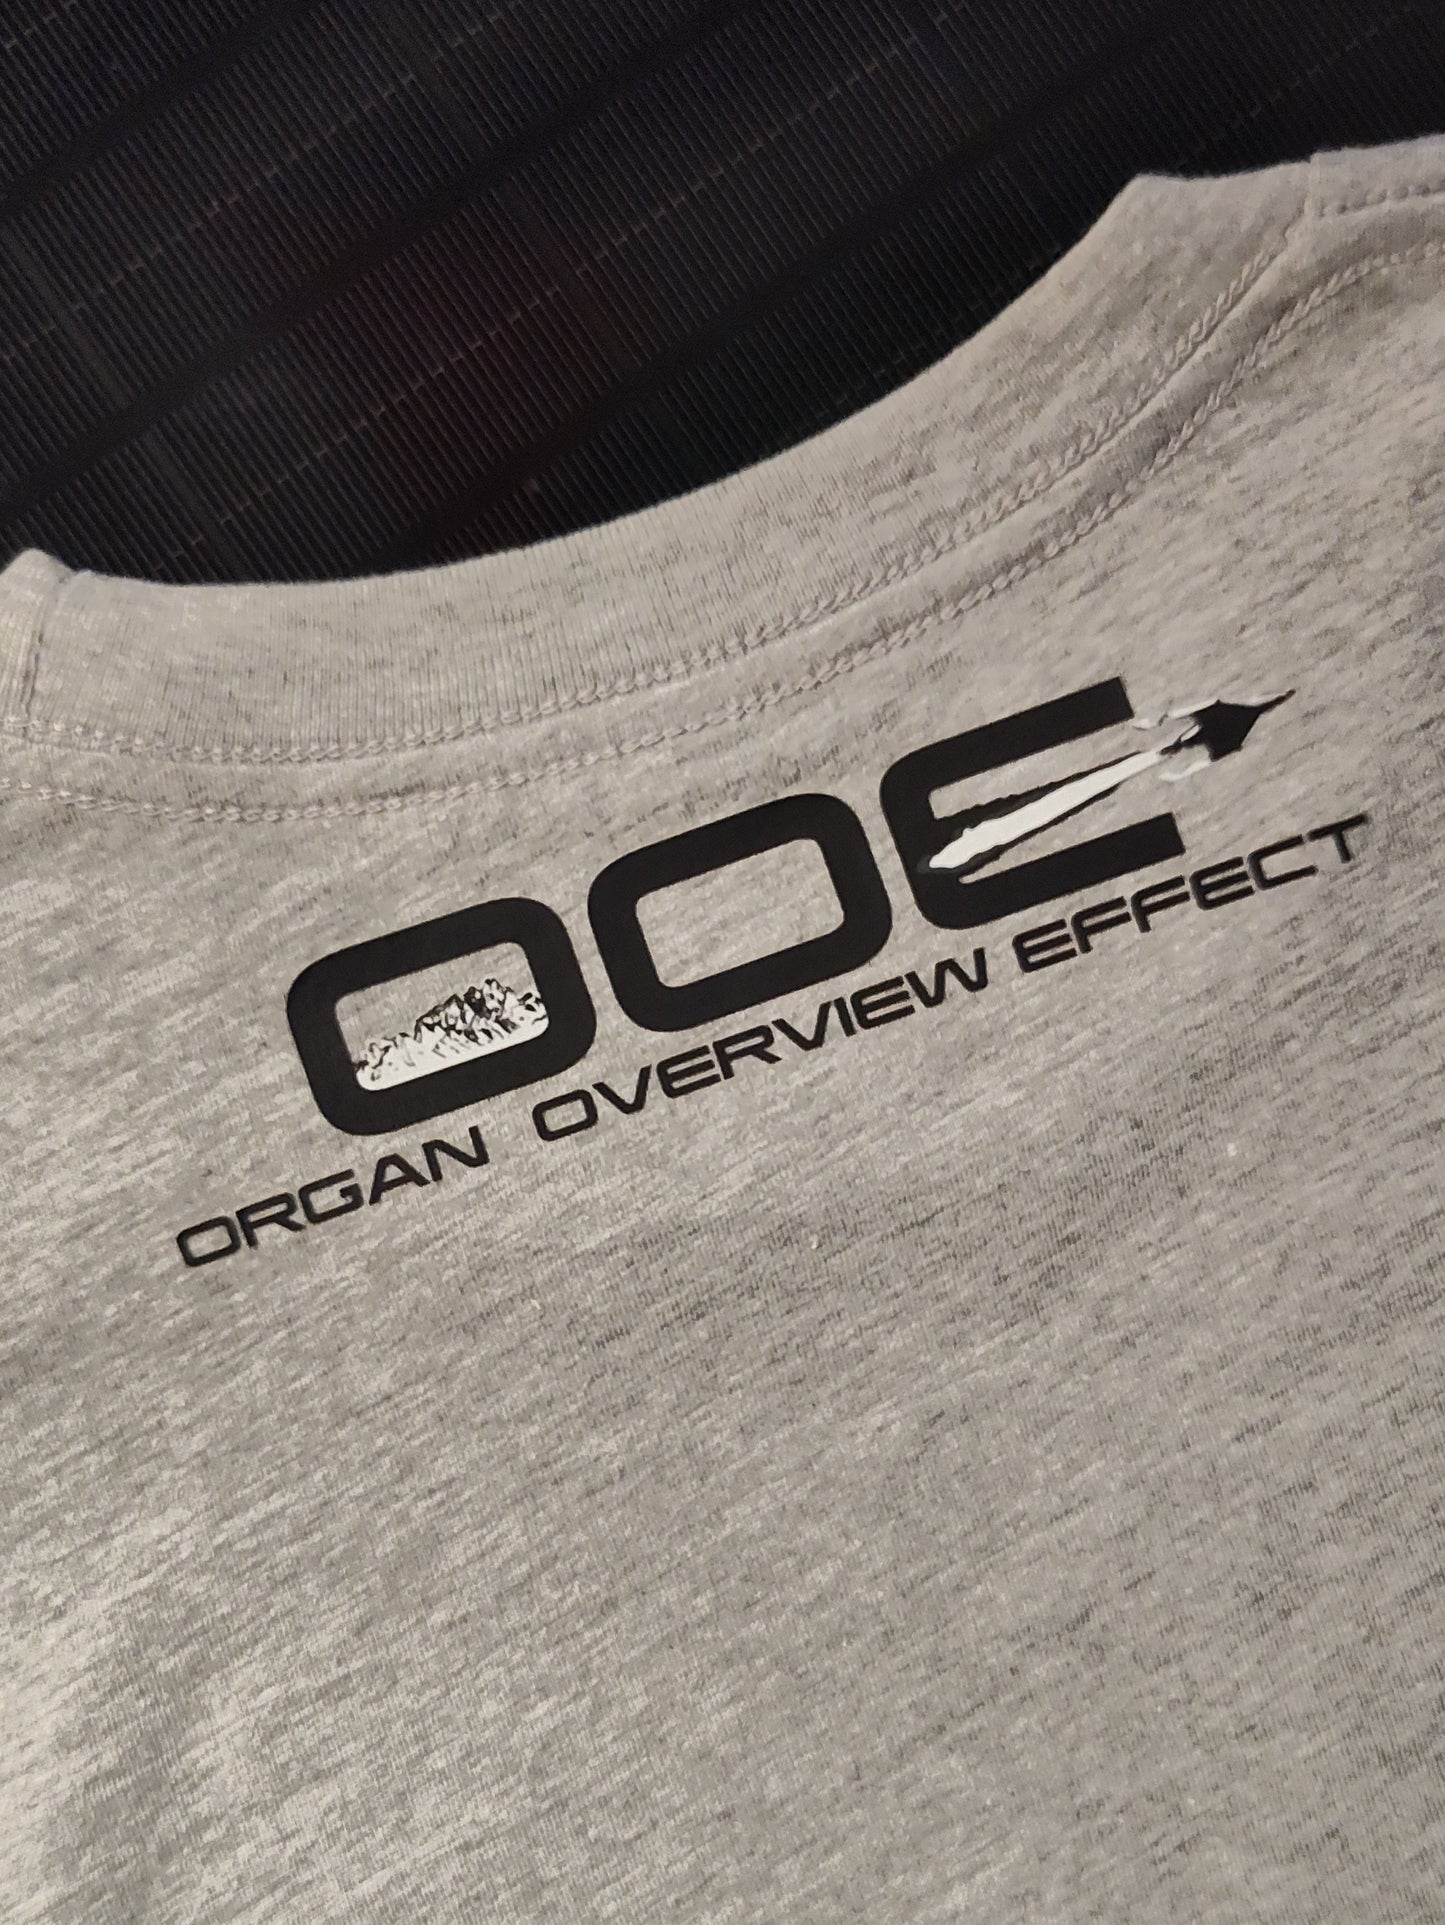 Organ Overview Effect "Gateway" T-shirt